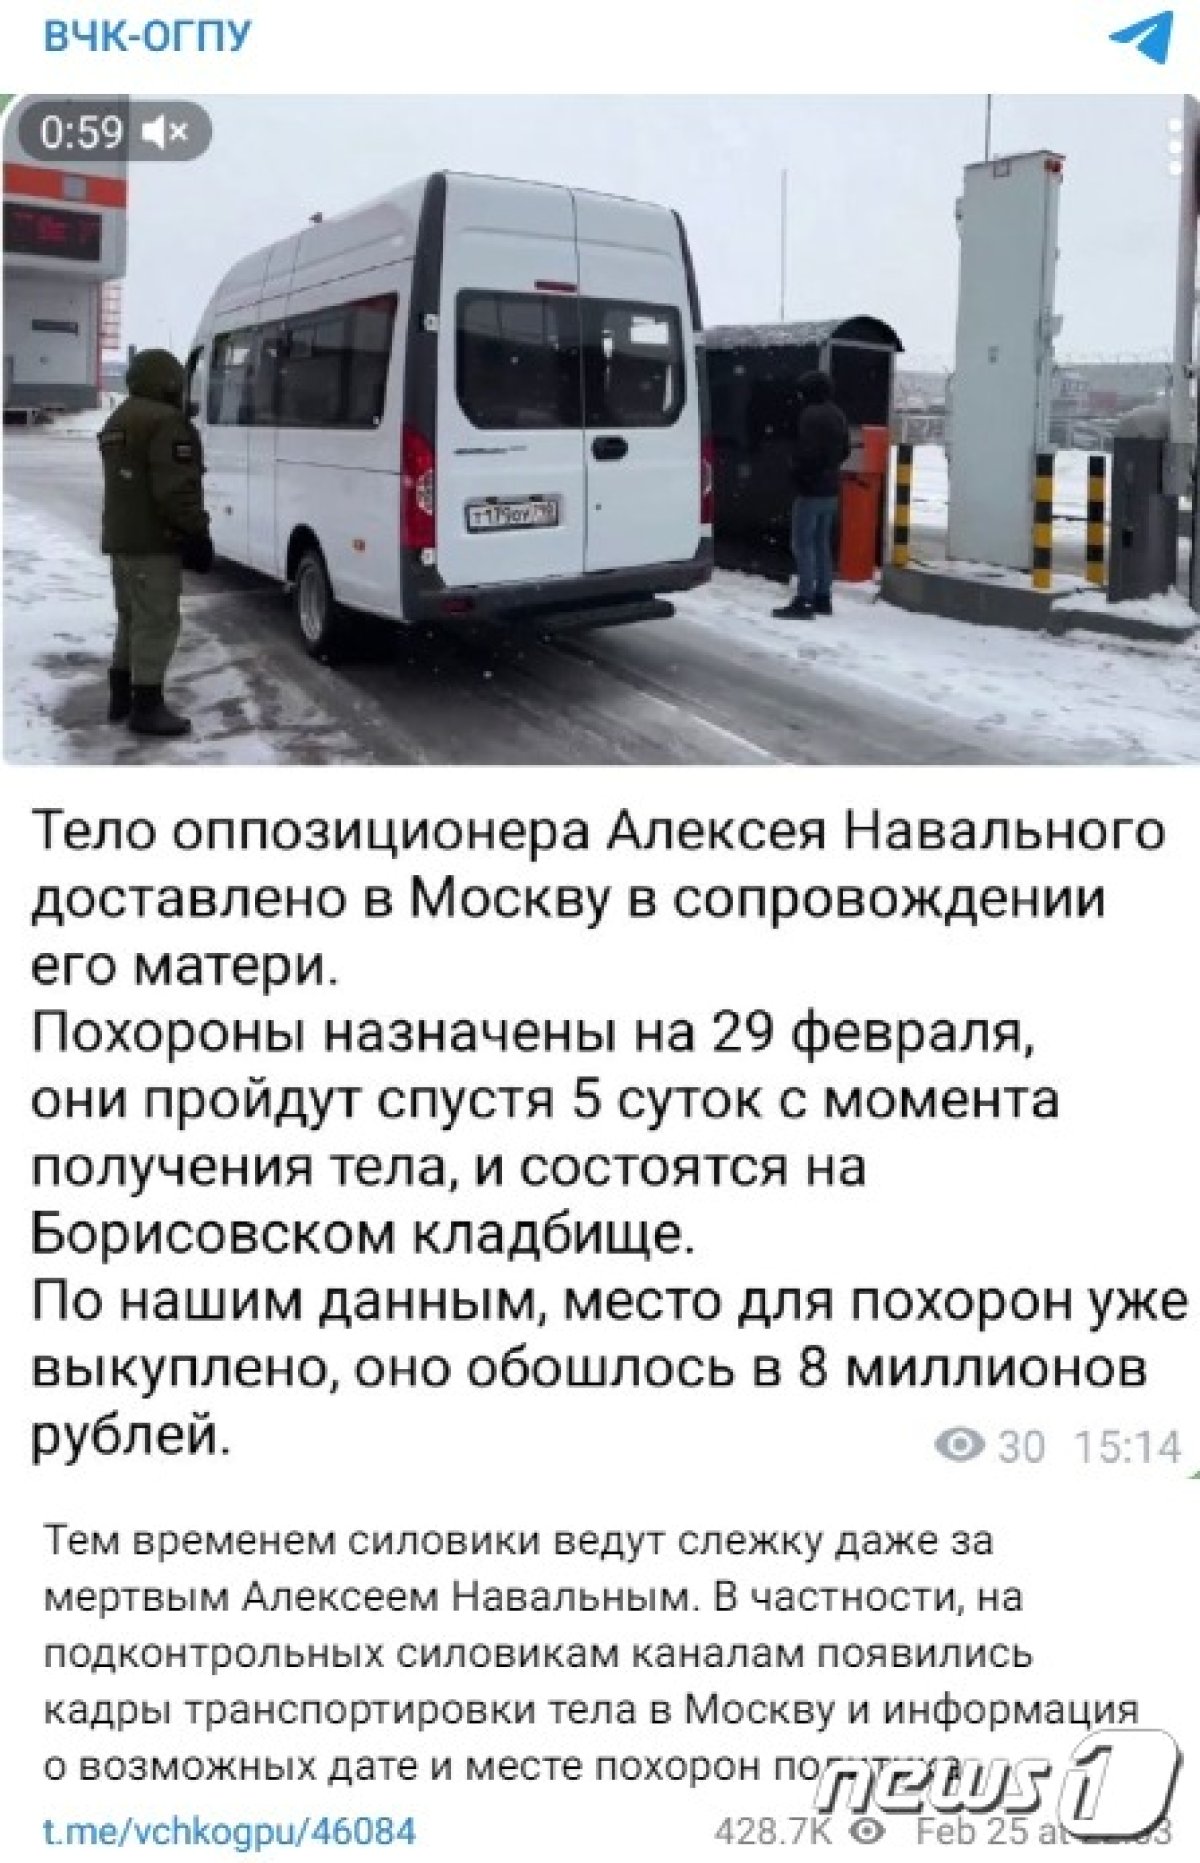 러시아 현지 텔레그램 채널인 VPC-OGPU는 알렉세이 나발니의 시신을 모스크바로 이송한 것으로 추정되는 영상과 장례식 날짜 및 장소에 대한 정보를 게재했다. 이 매체에 따르면 나발니의 장례식은 오는 29일로 예정돼 있고, 보리소프스코예에서 실시될 예정이다. (텔레그램 갈무리)